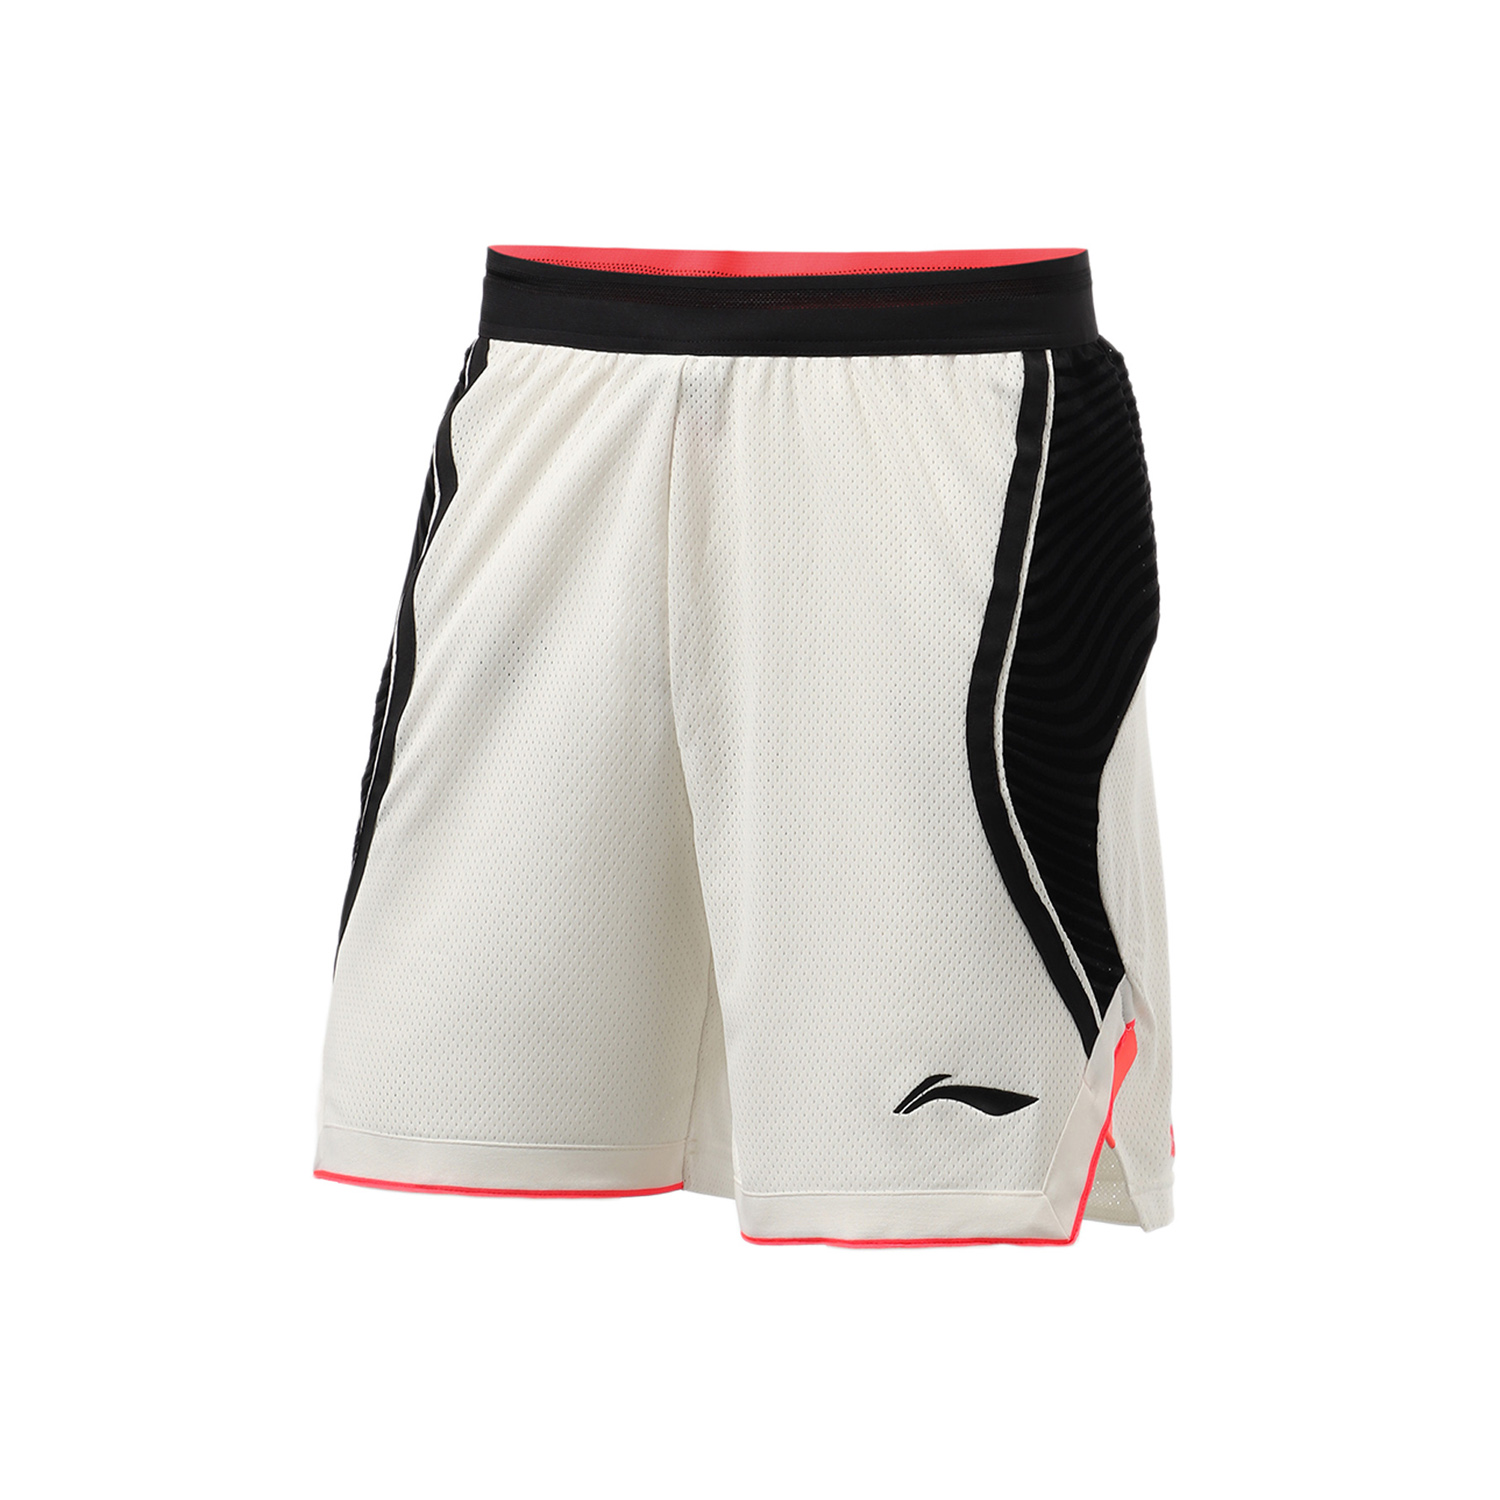 籃球系列男子比賽短褲,CJMcCollum,AAPR241,籃球系列男子比賽短褲,男款,全系列商品